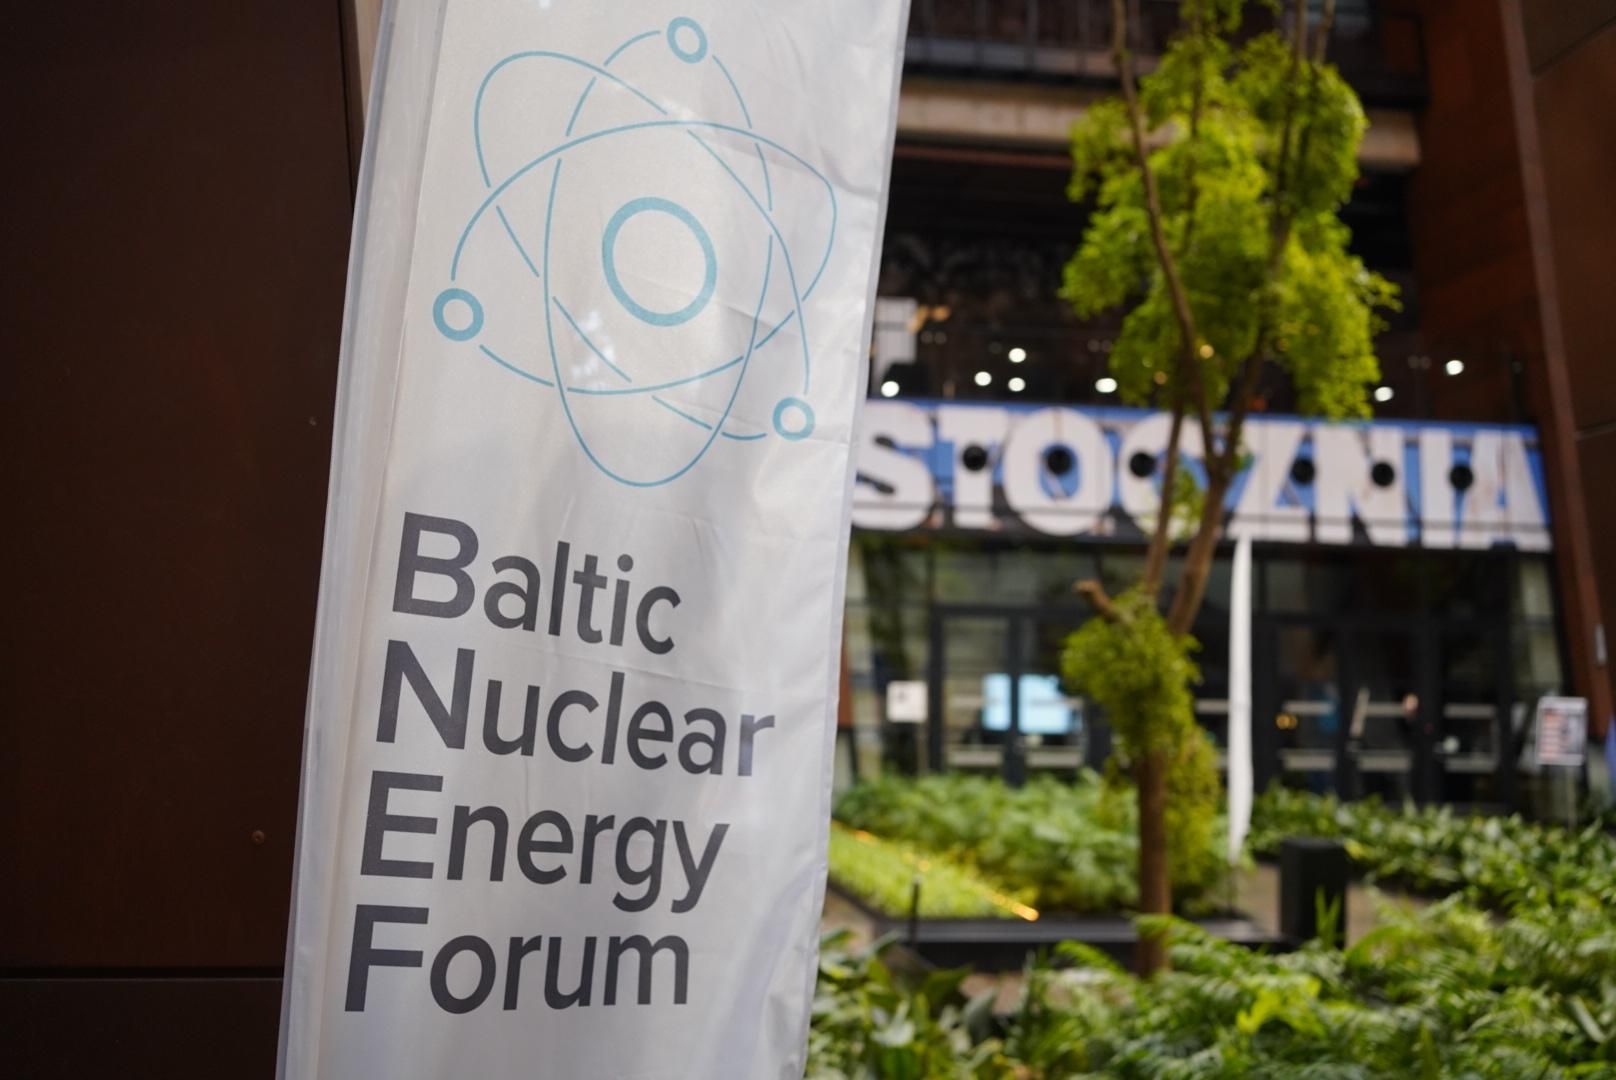 Zdjęcie flagi z nazwą Baltic Nuclear Energy Forum, a w tle zieleń i napis STOCZNIA